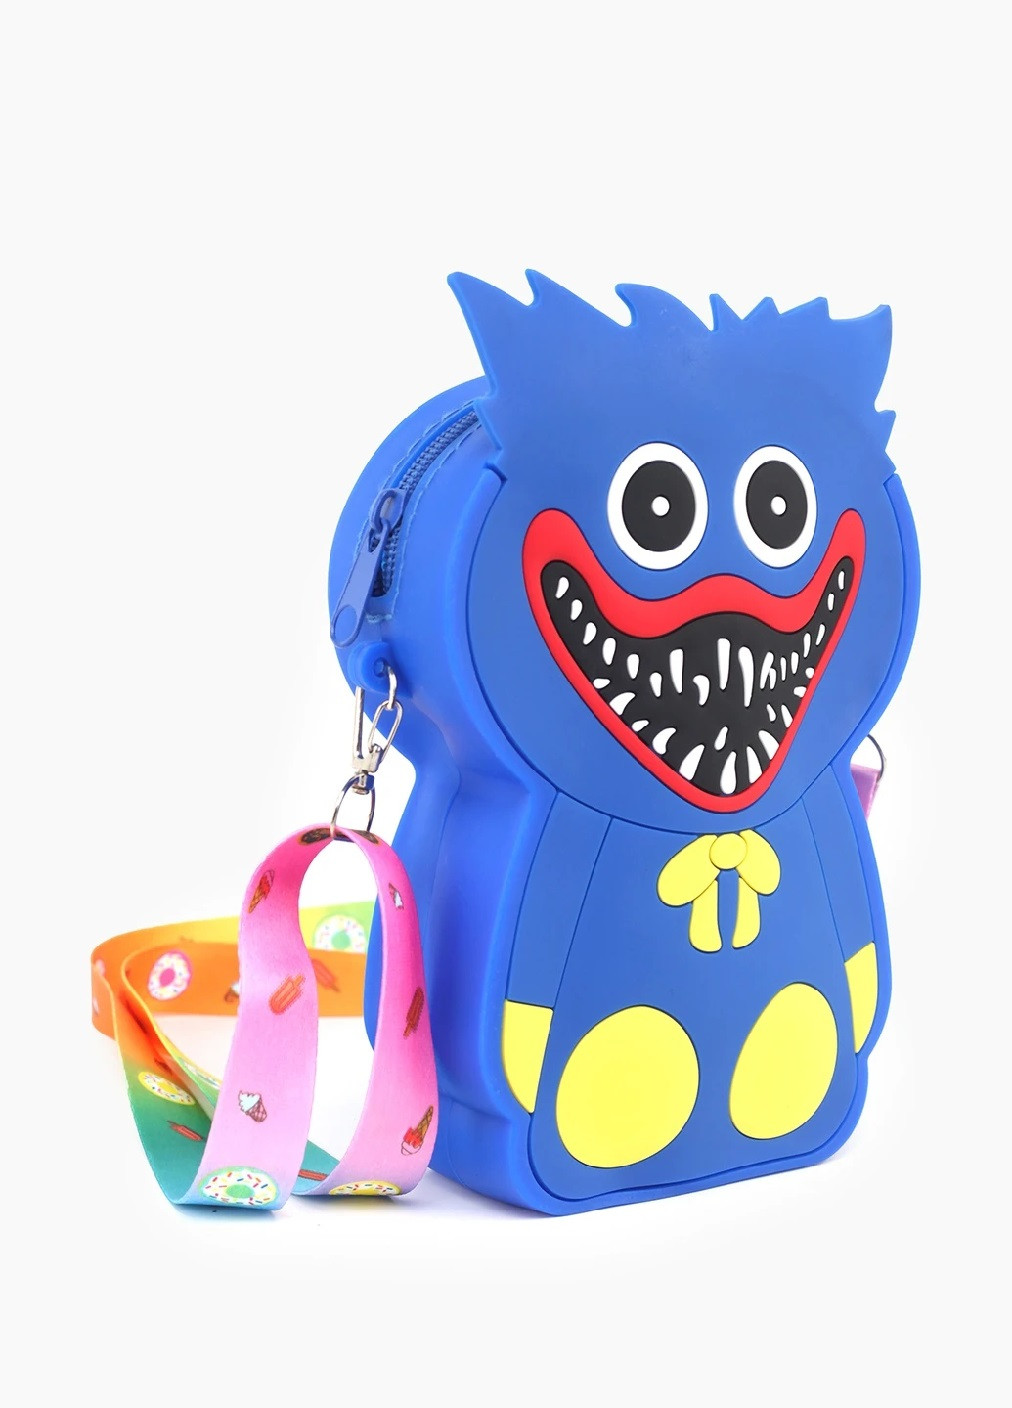 Сумочка игрушка антистресс стильная мягкая силиконовая для детей девочек Поппи плейтайм 13х10 см (475415-Prob) Хаги Ваги синий Unbranded (267152396)